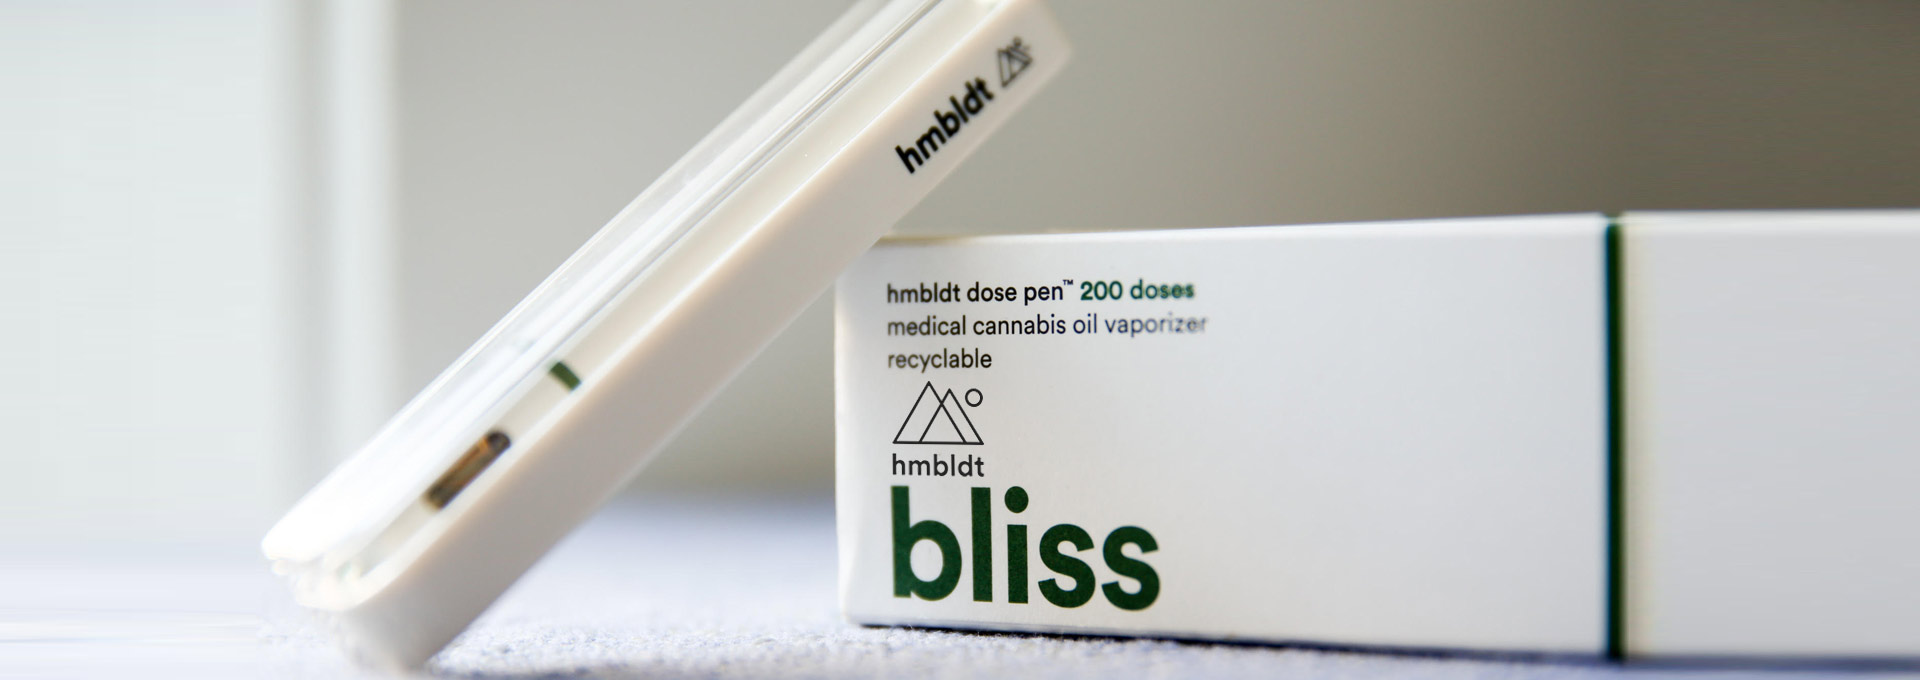 Hmbldt Review Precise Cannabis Dosage Pen